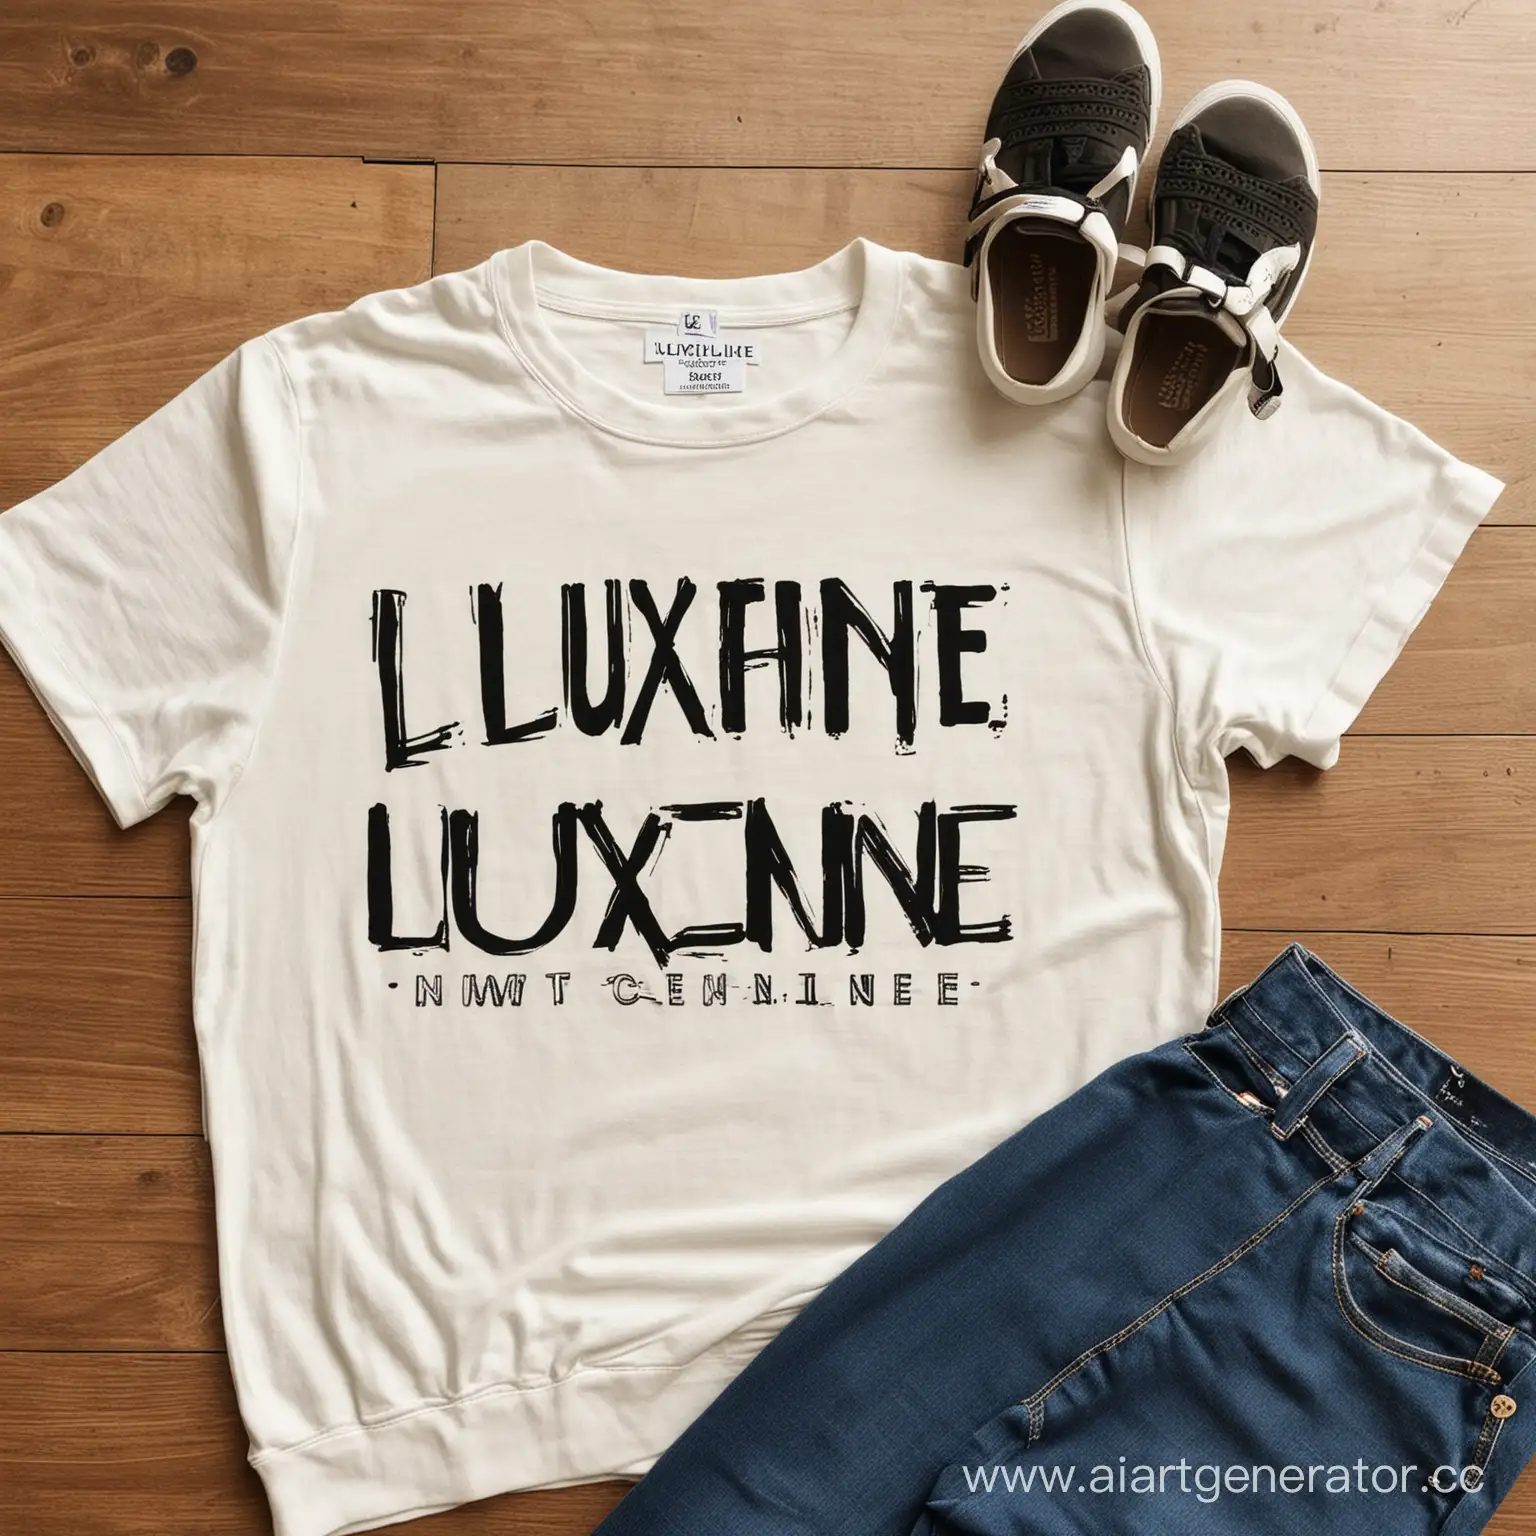 одежда бренда LuxeLine
